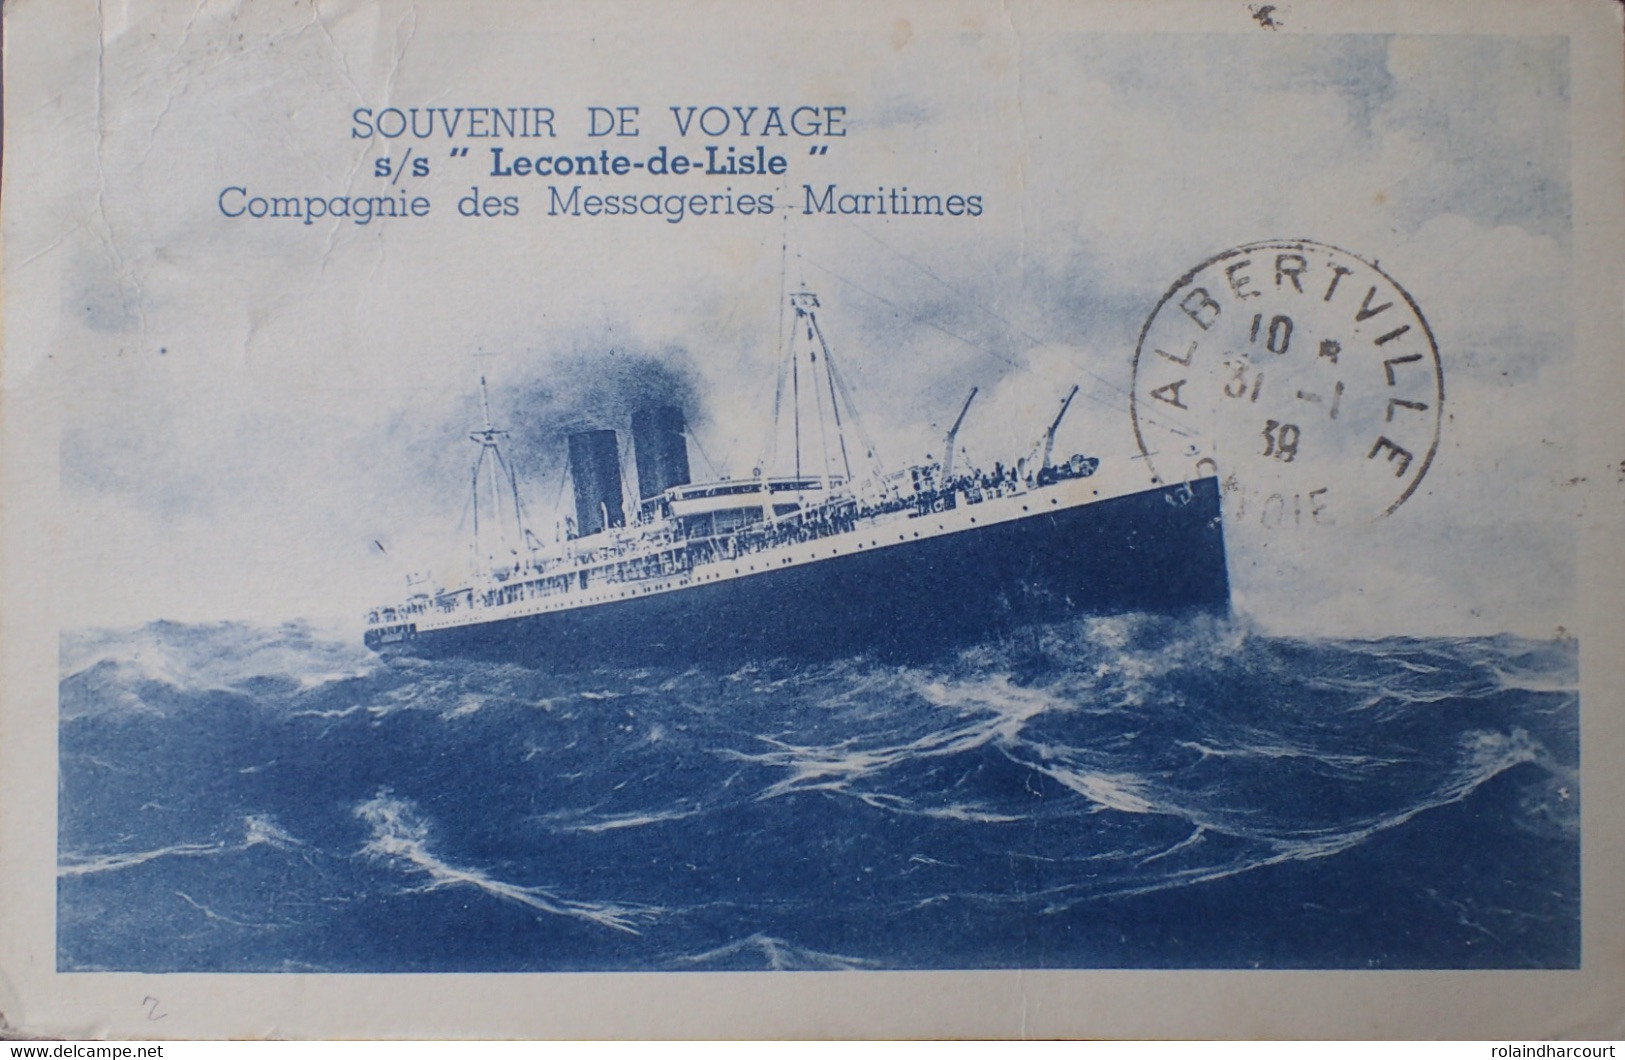 A415 - POSTE MARITIME - ✉️ DJIBOUTI à LE POULIQUEN - Lettre postée à bord de PAQUEBOT " LECONTE DE L'ISLE "